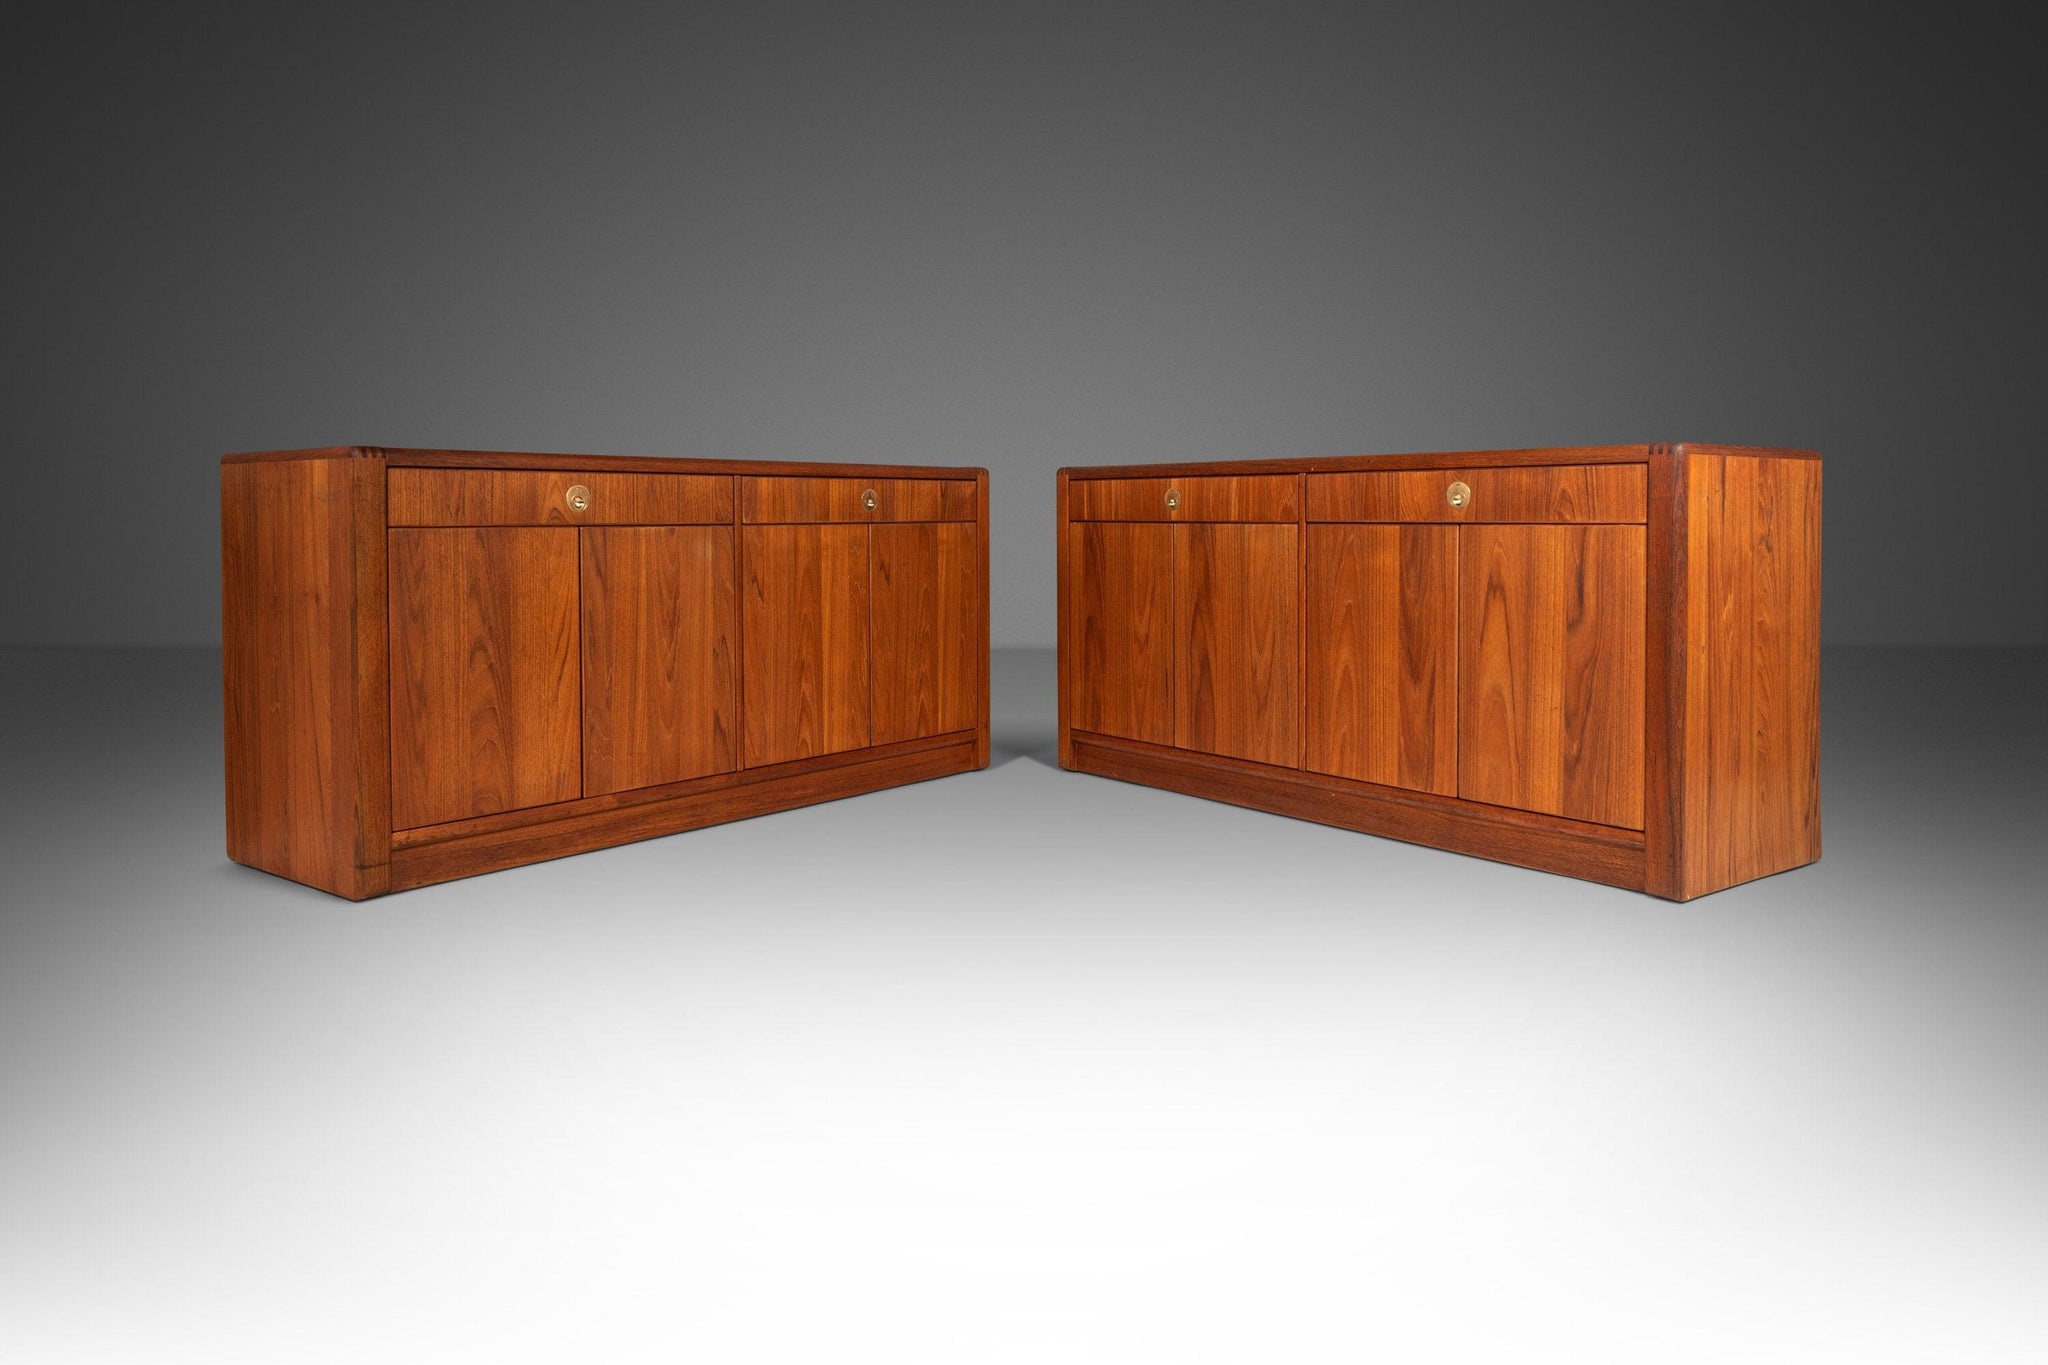 Fai Credenza - Buffet - Storage Contemporary Cabinet Walnut Oak